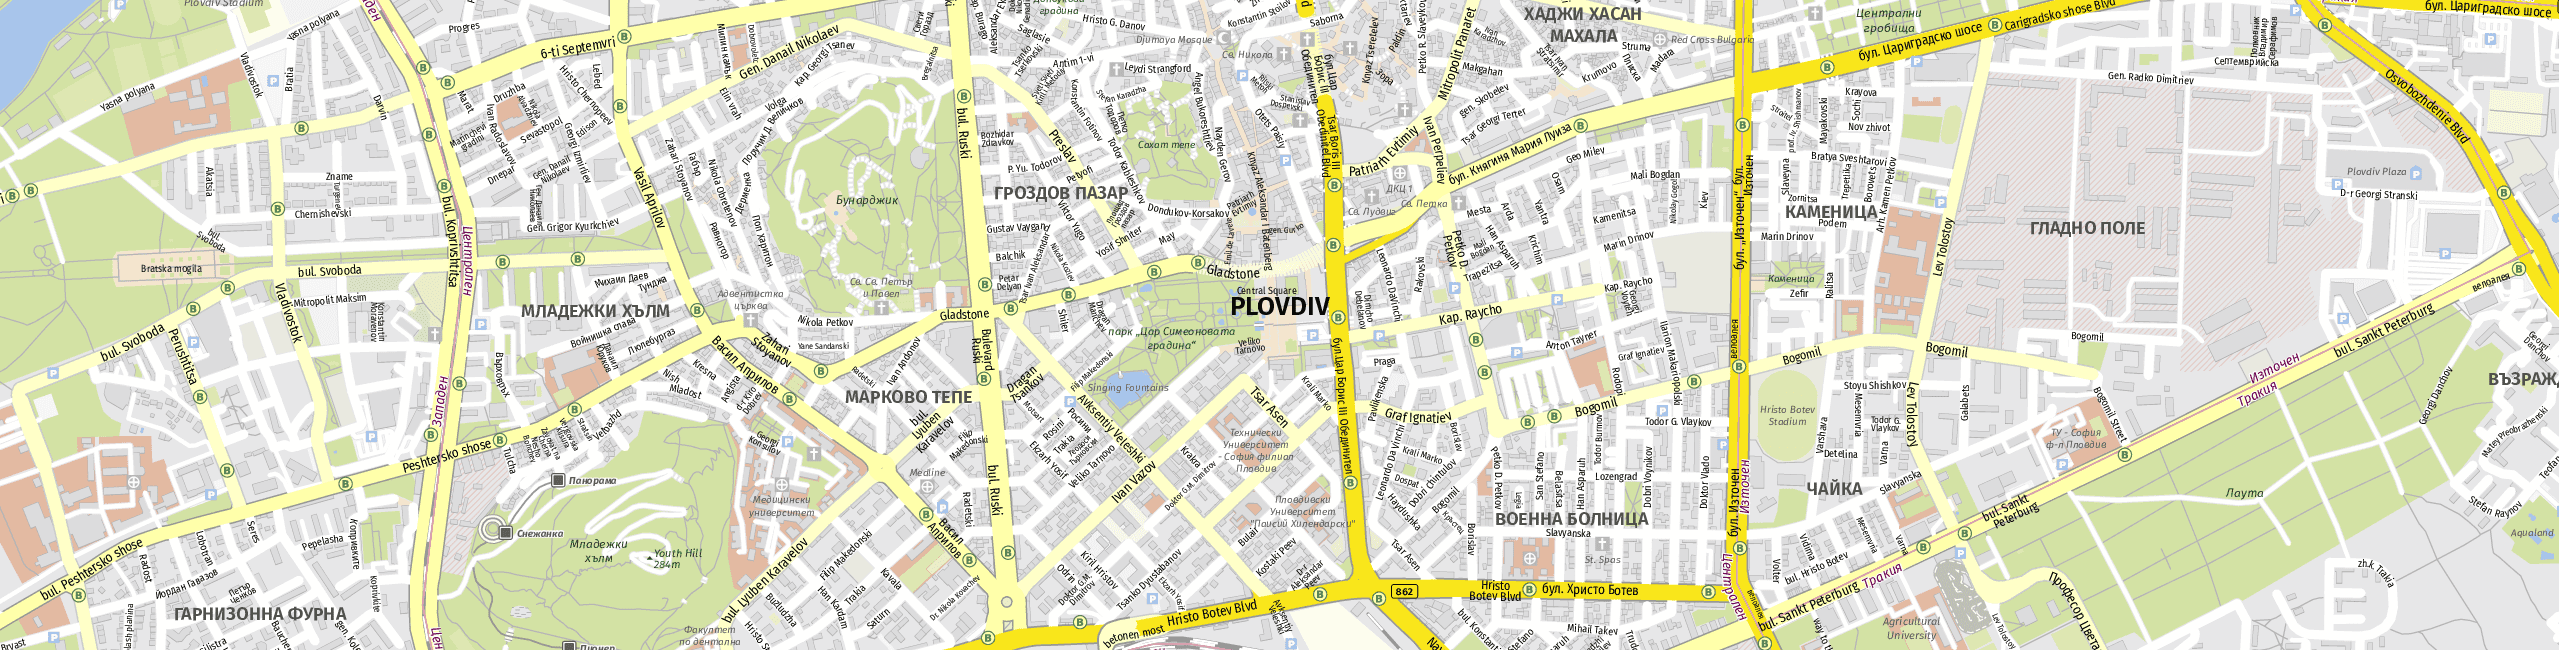 Stadtplan Plovdiv zum Downloaden.